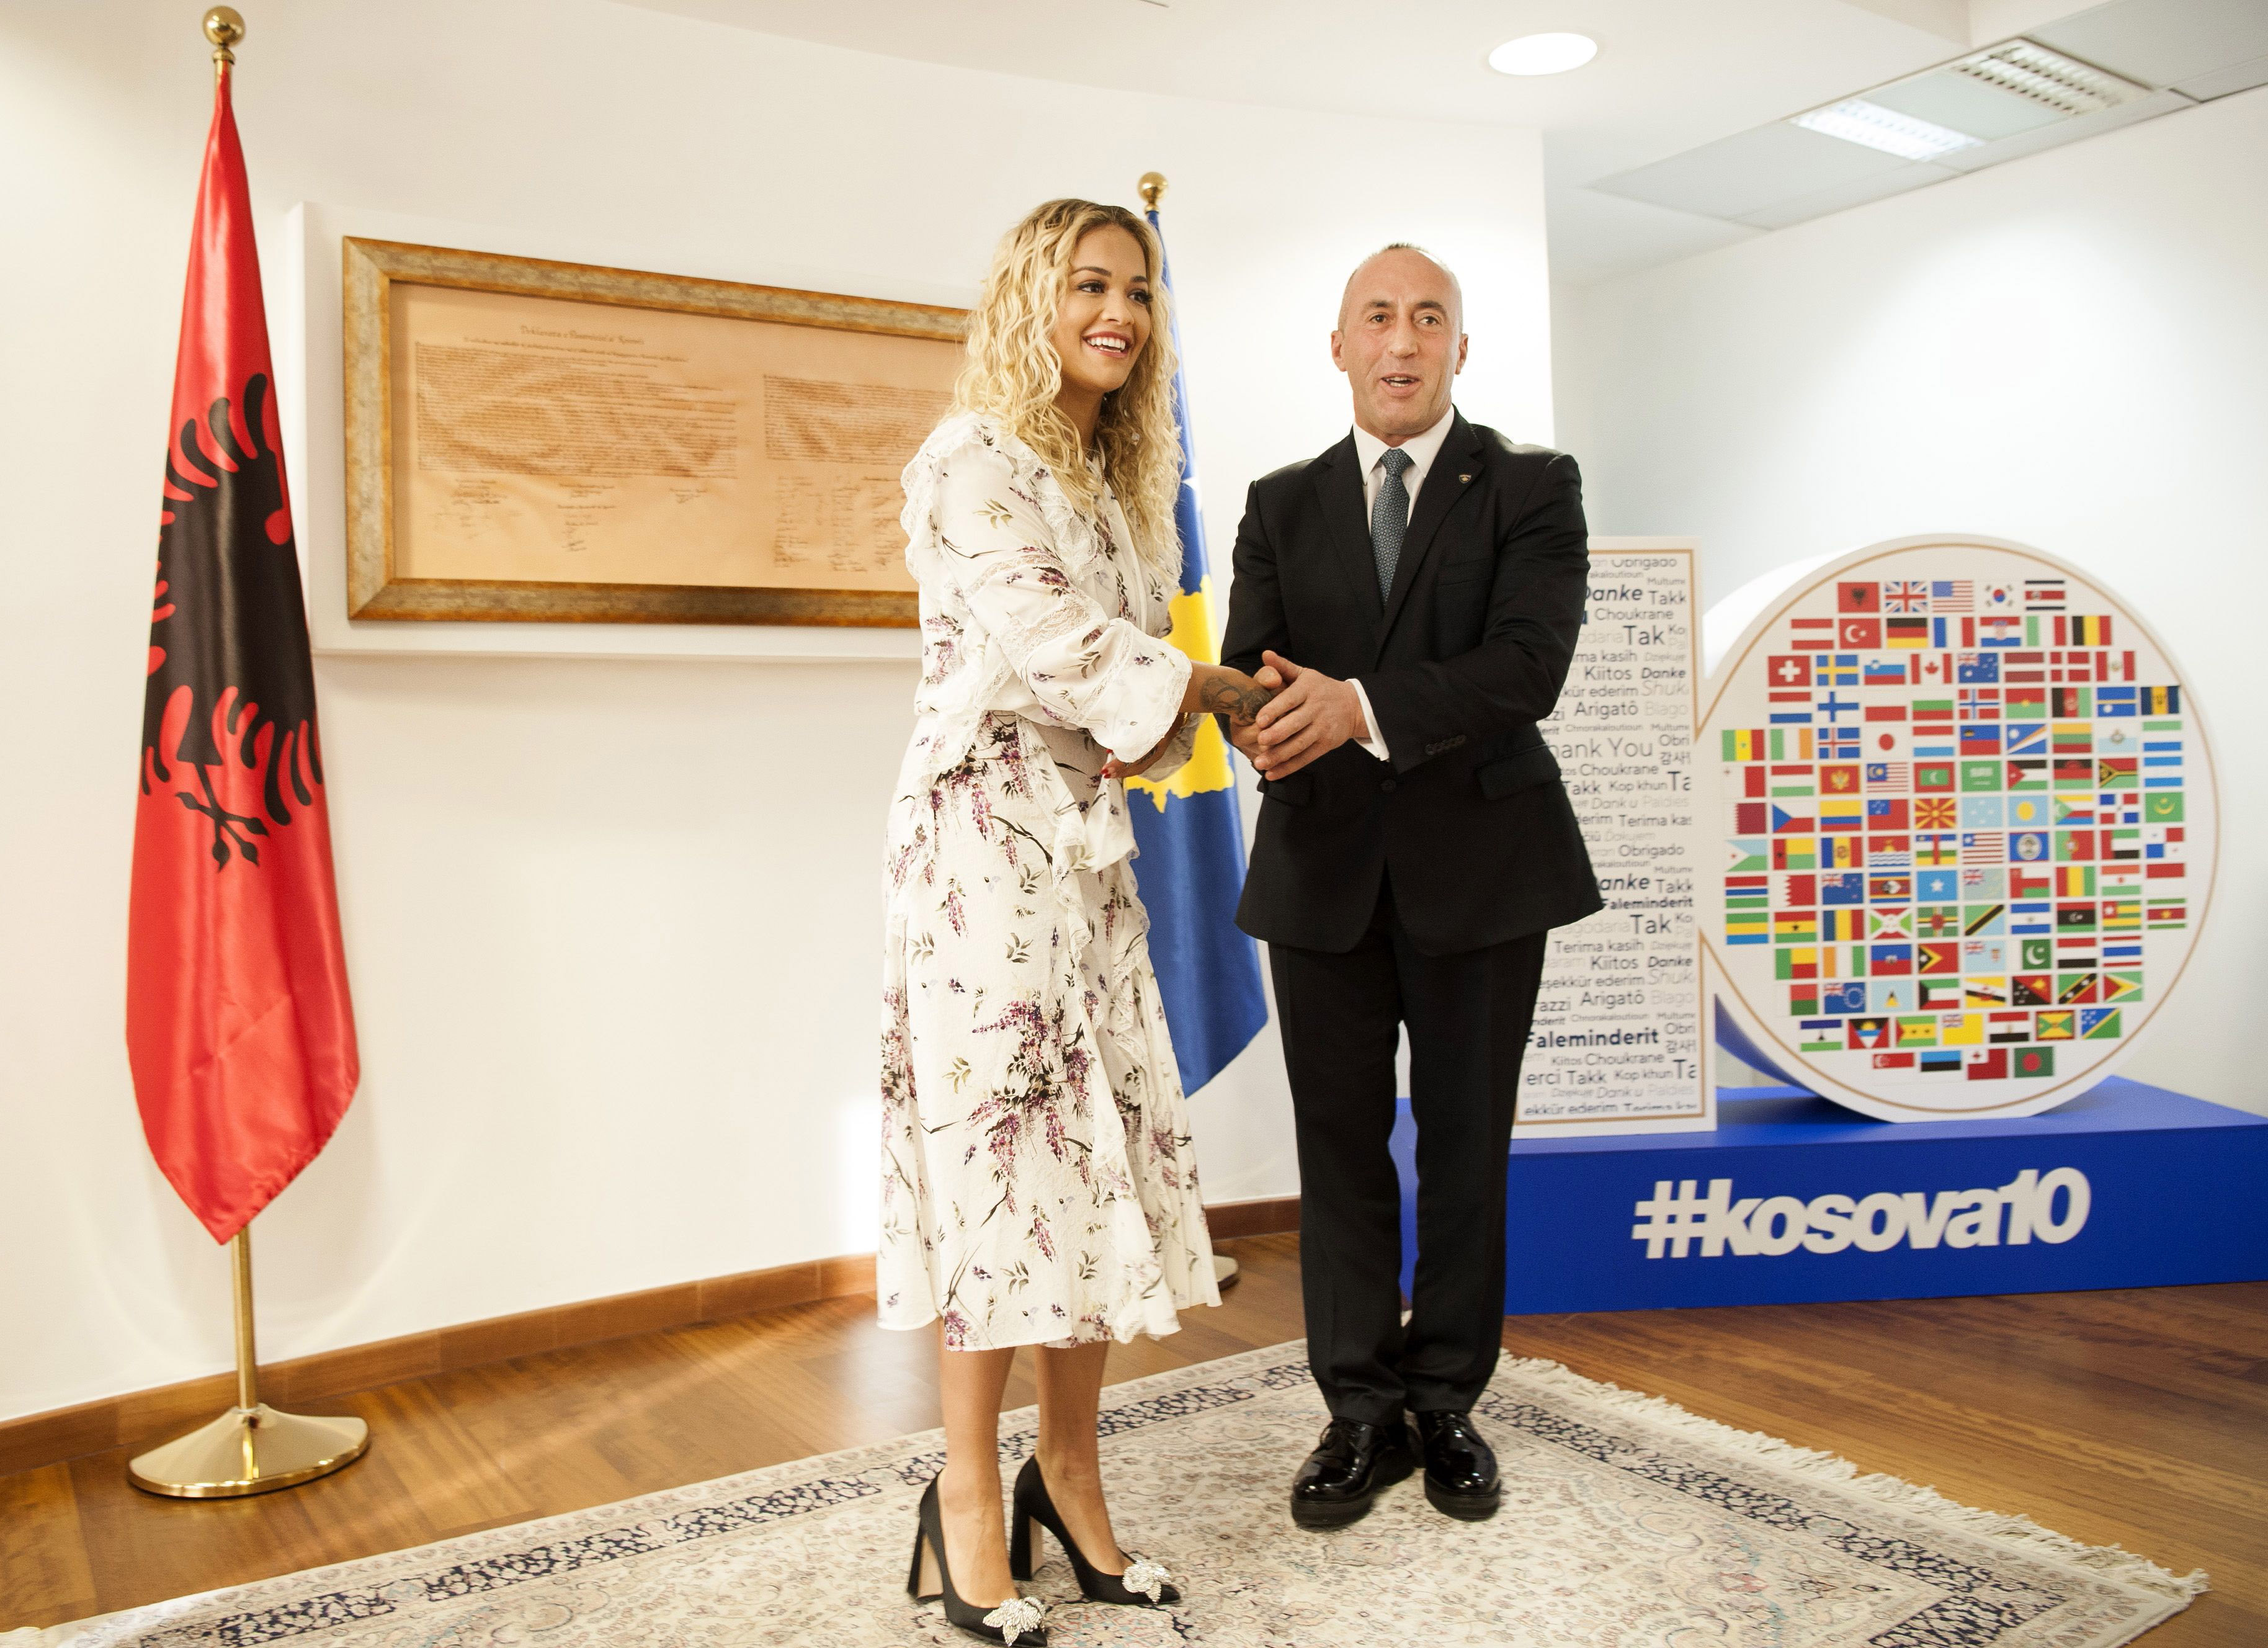 Рита Ора вернулась в родное Косово по случаю десятилетия независимости республики